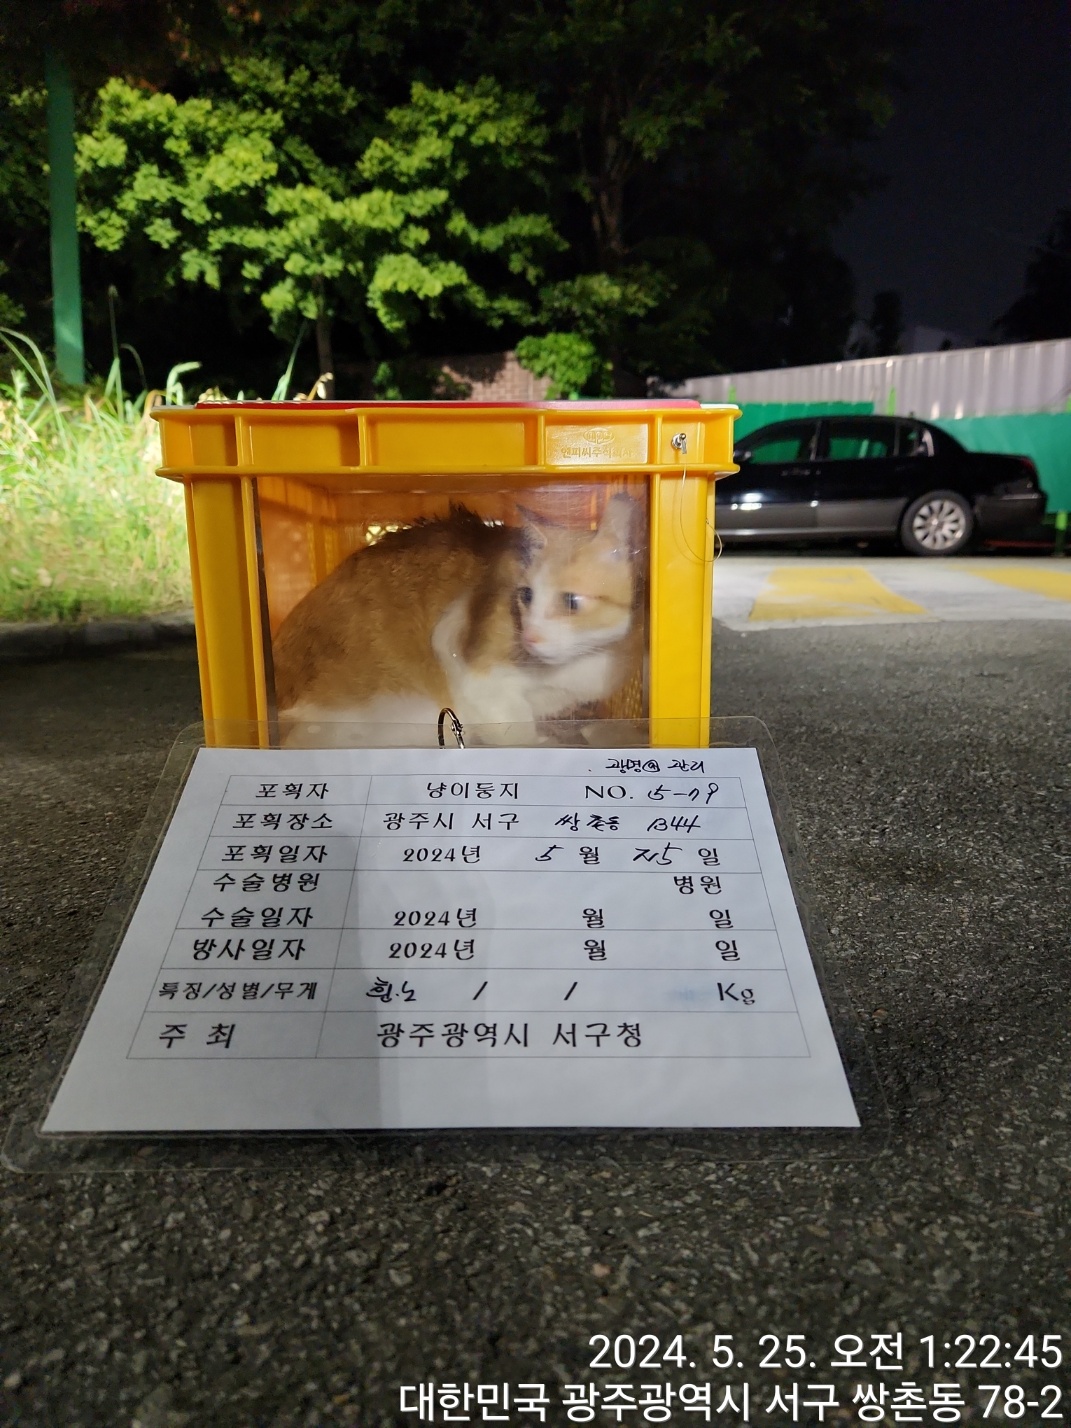 보호중동물사진 공고번호-광주-서구-2024-00281